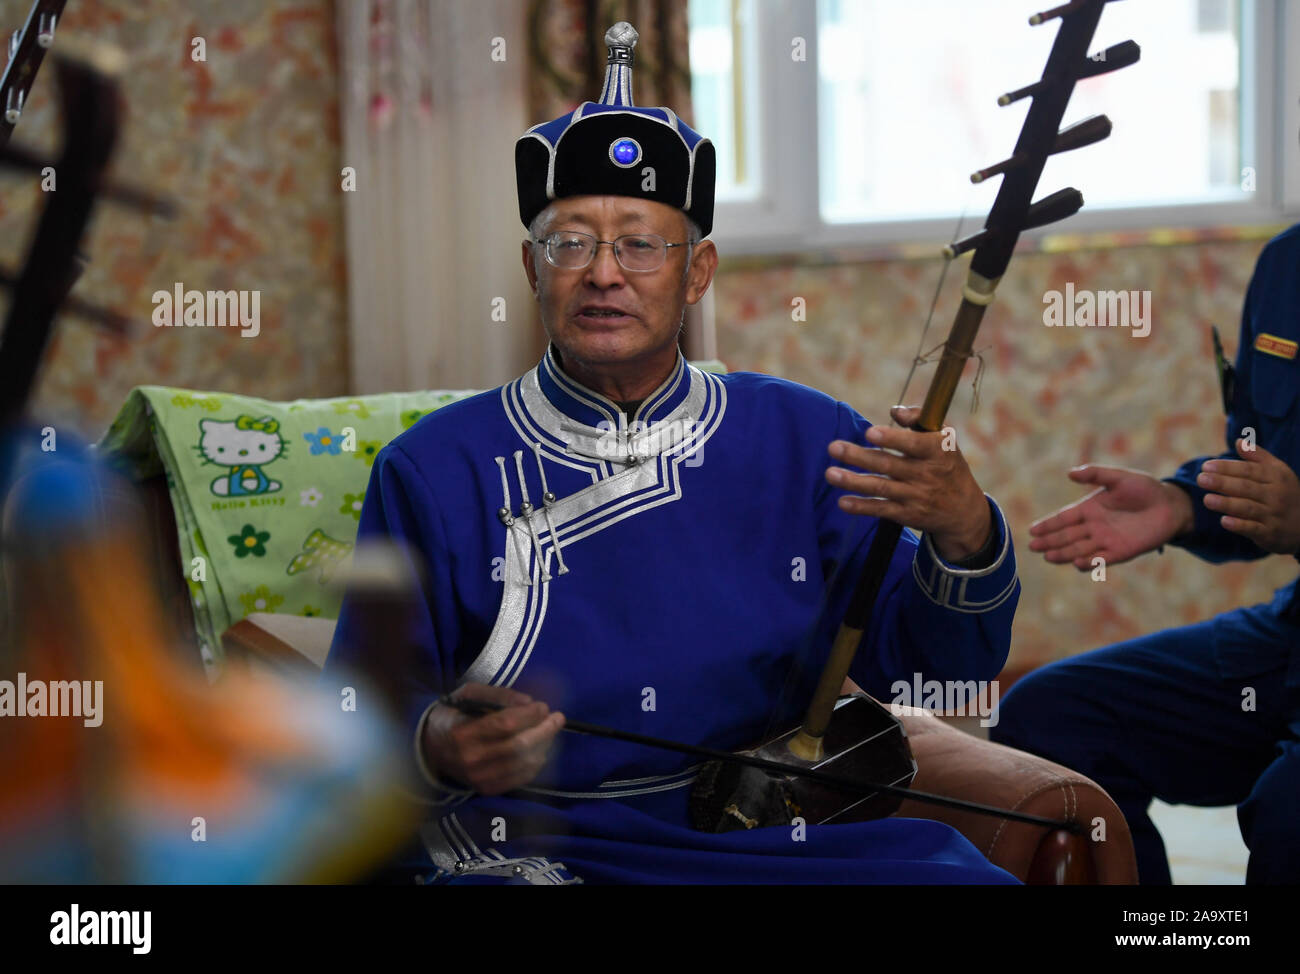 (191118) - HOHHOT, November 18, 2019 (Xinhua) - Baoyin Dailai, Leiter einer musikalischen Team, führt in Horqin Youyi Zhongqi, North China Autonome Region Innere Mongolei, Nov. 17, 2019. Um das Bewusstsein der Menschen für den Brandschutz fördern, einige ältere Bürger freiwillig gebildet ein musikalisches Team und Haolaibao durchgeführt, eine Art mongolische Volkskunst mit Gesang in den Mongolischen sprachen mit Instrumentalbegleitung, mit der Sicherheit im Brandfall. Seit fast zehn Jahren, hat sich das Team über 100 Haolaibao Songs mit der lokalen Feuerwehr Abteilung erstellt und präsentiert über 1.000 Leistung zu Mongolischen Hirten Stockfoto